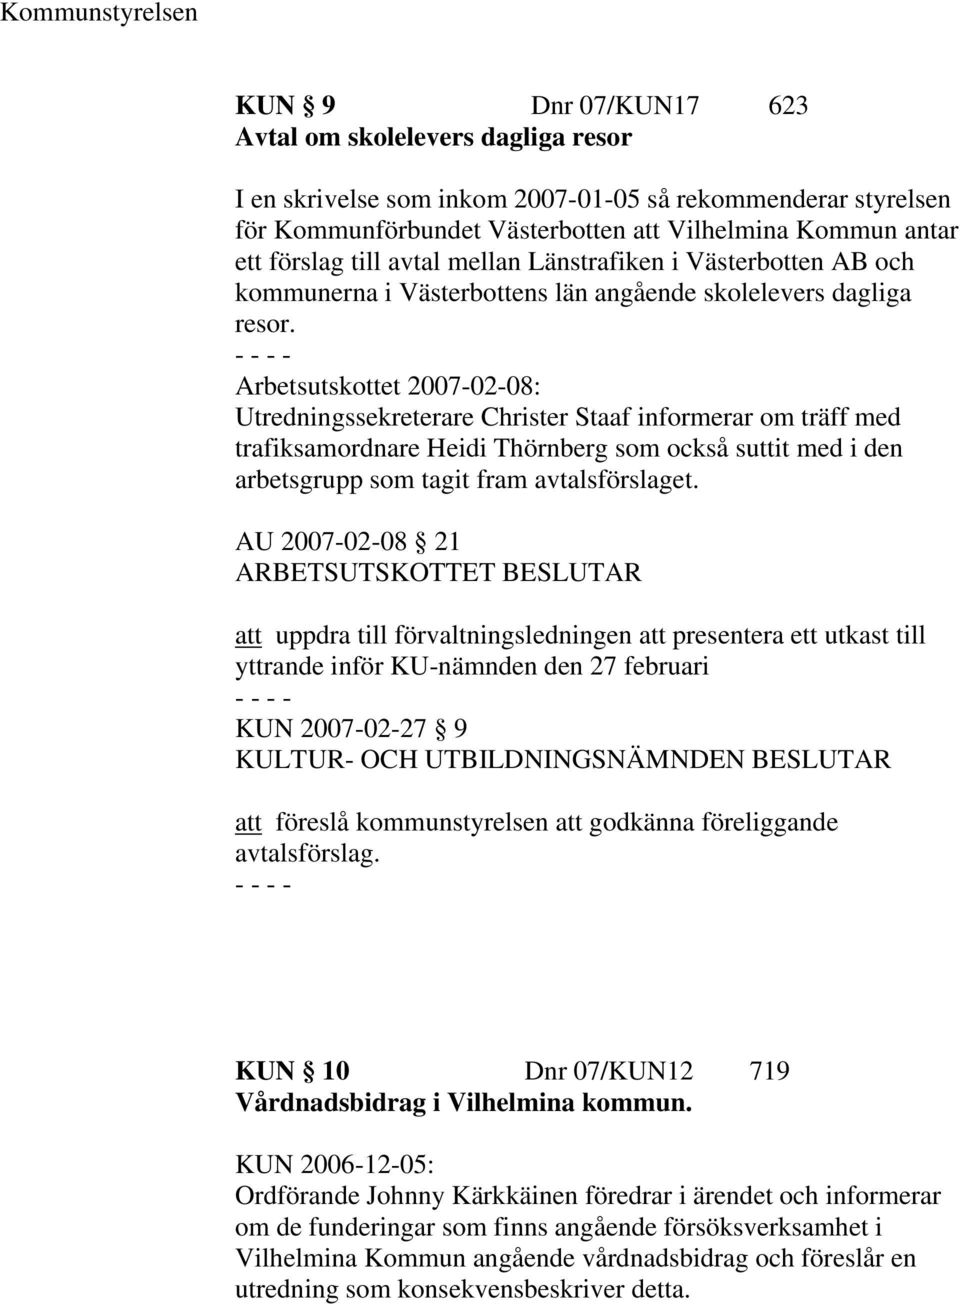 Arbetsutskottet 2007-02-08: Utredningssekreterare Christer Staaf informerar om träff med trafiksamordnare Heidi Thörnberg som också suttit med i den arbetsgrupp som tagit fram avtalsförslaget.